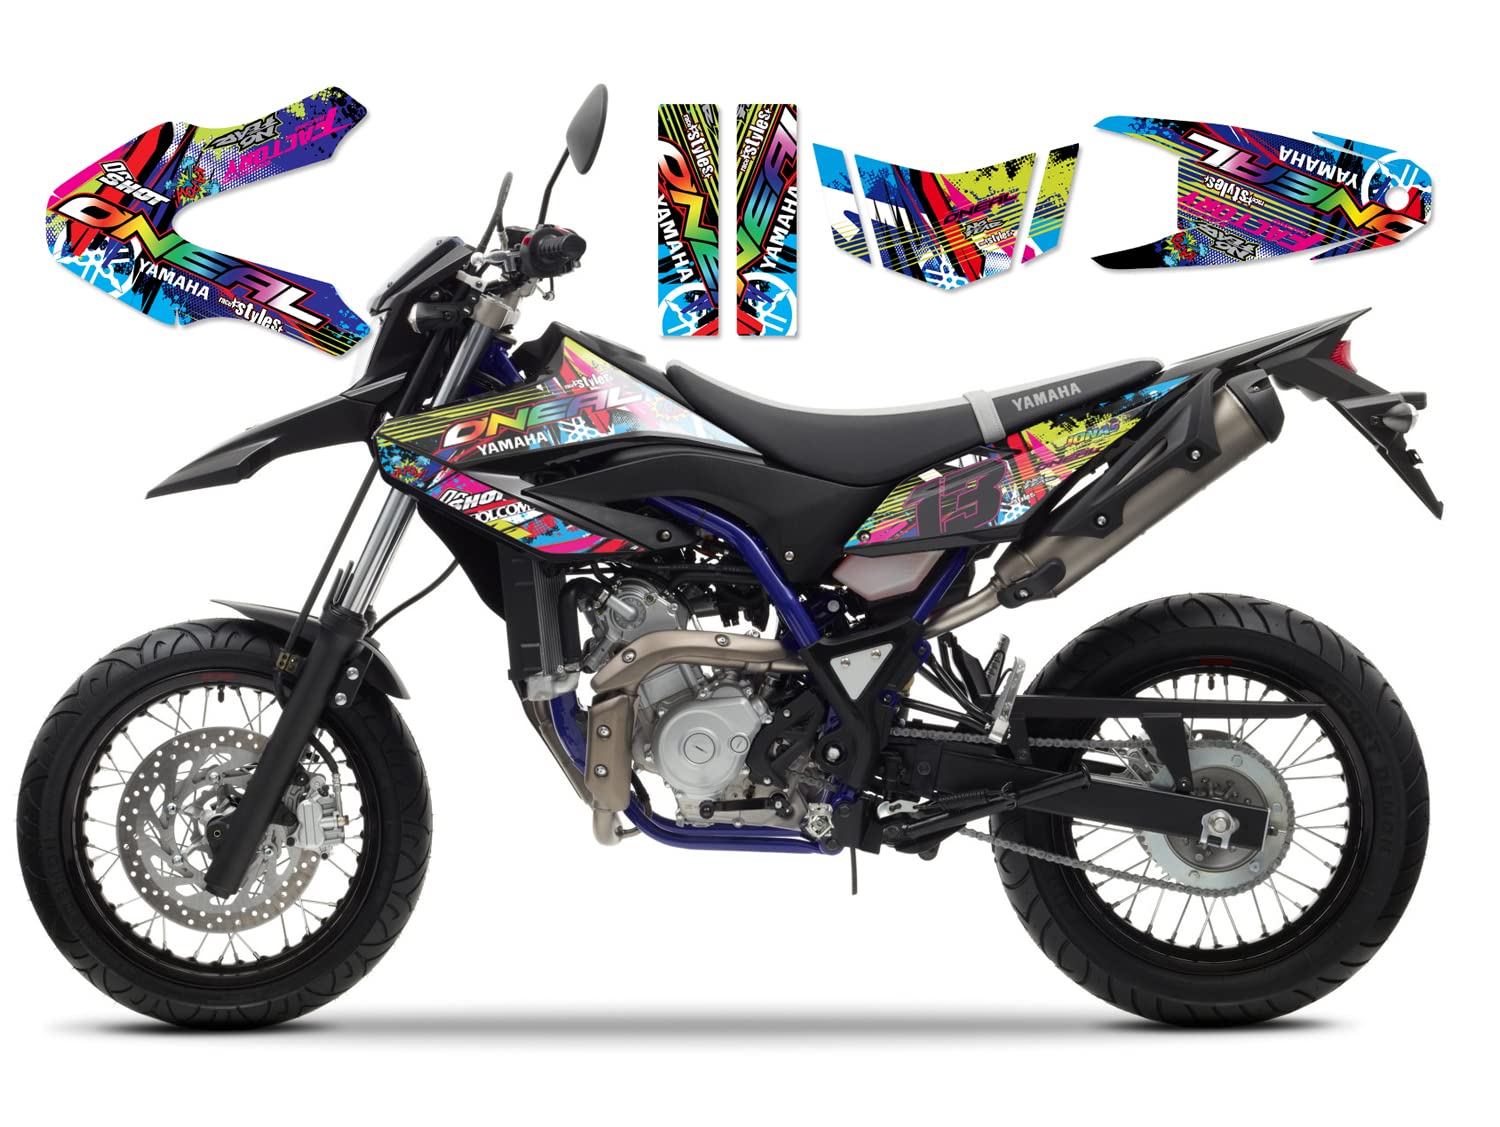 race-styles DEKOR kompatibel mit Yamaha WR 125 R Full Braaap !!! Premium neon Decals Sticker Aufkleber KIT 09-17 von race-styles